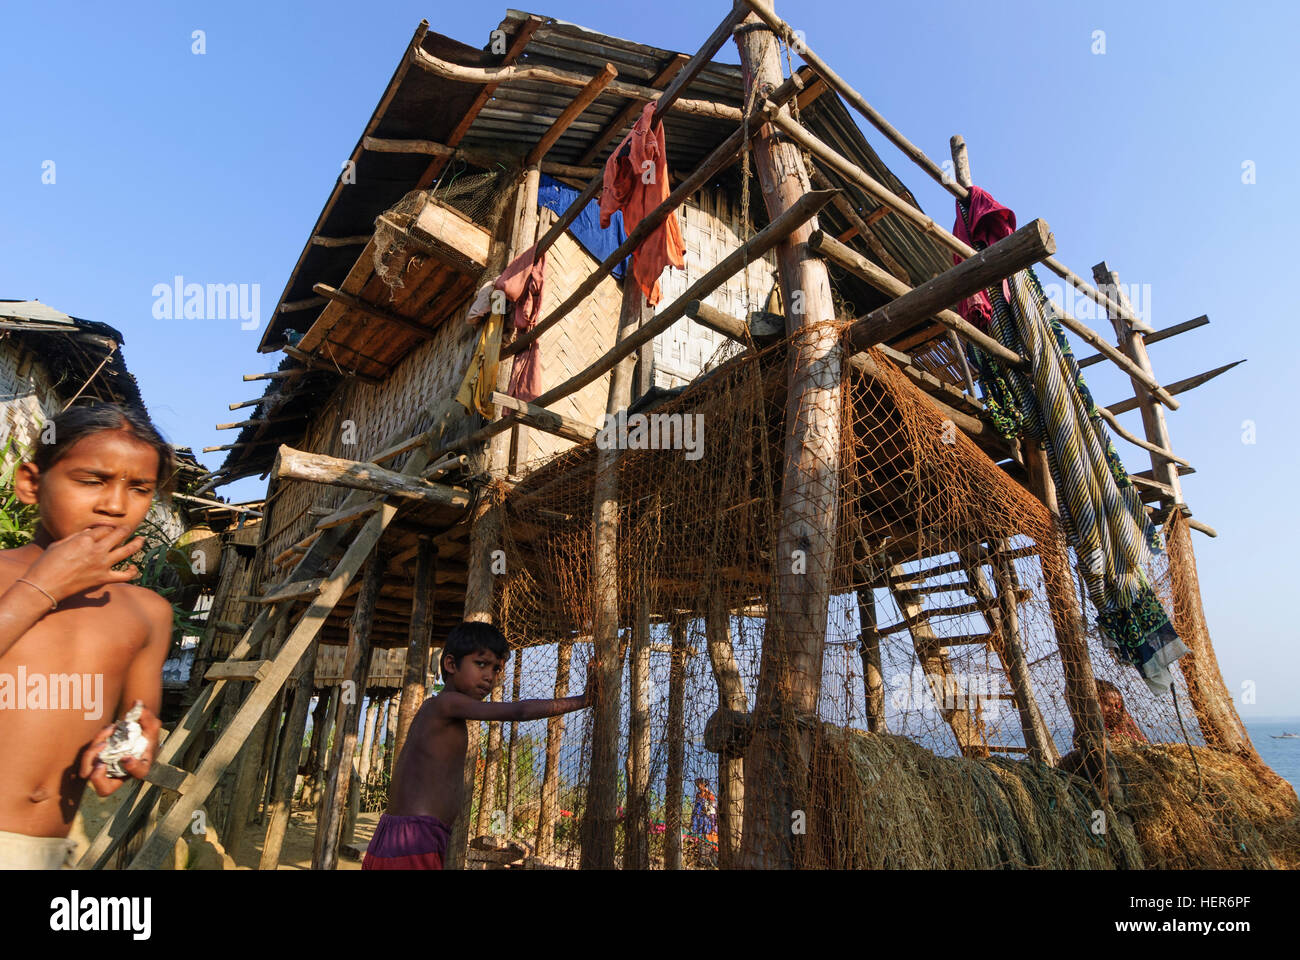 Rangamati: Popolo di Tripura minoranza su un isola nel Lago Kaptai, Divisione di Chittagong, Bangladesh Foto Stock